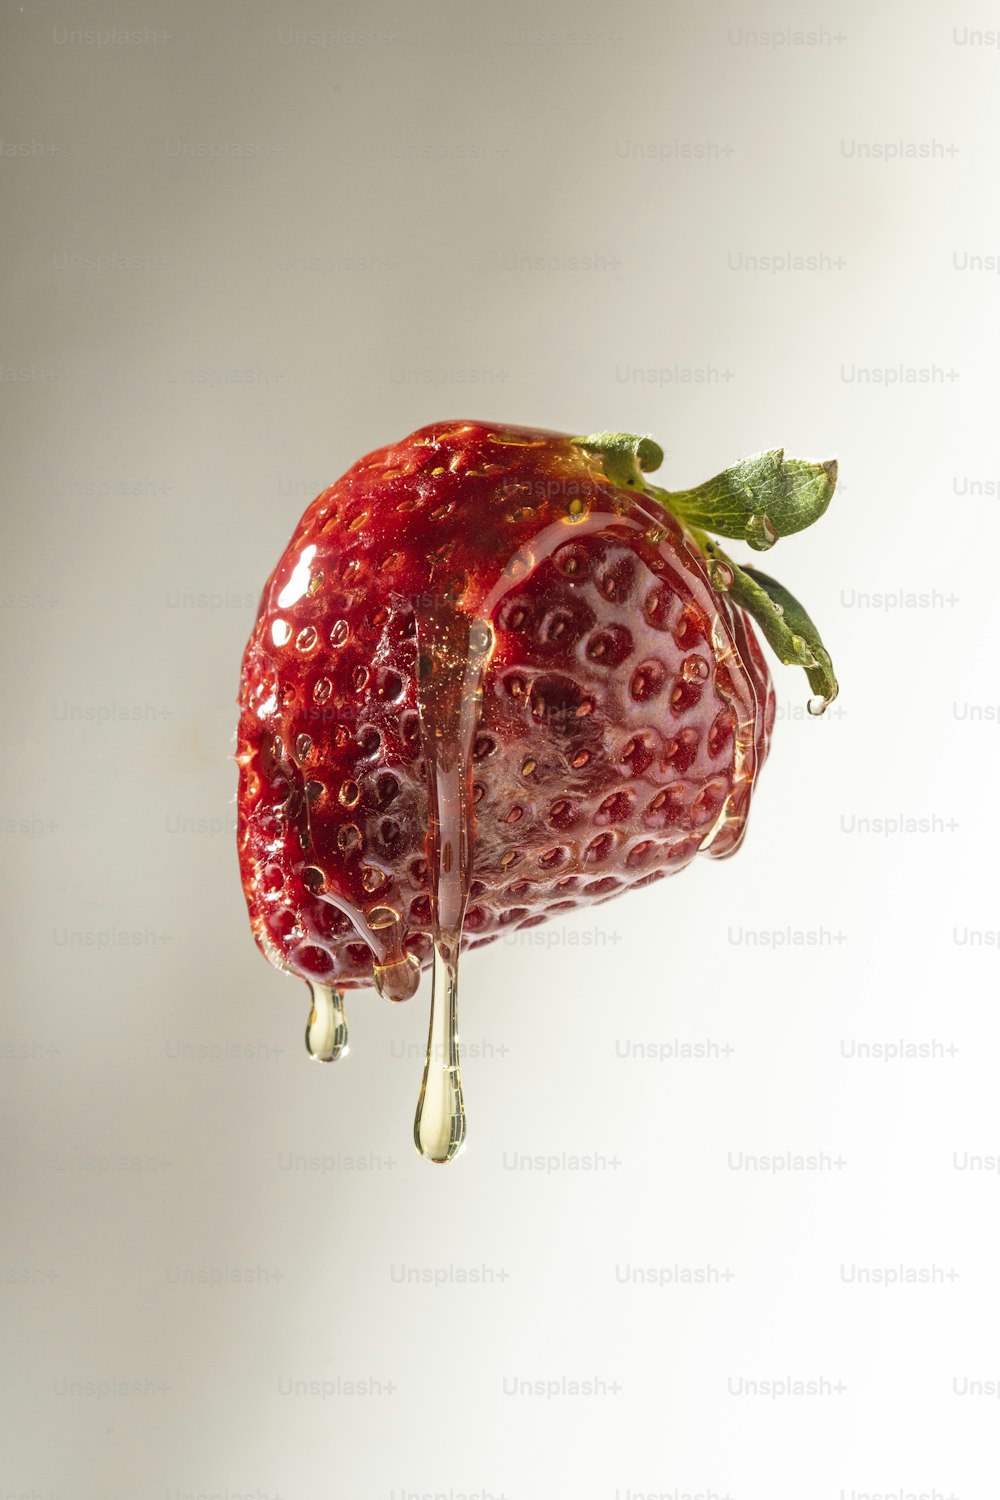 eine Erdbeere mit einem Tropfen Wasser darauf